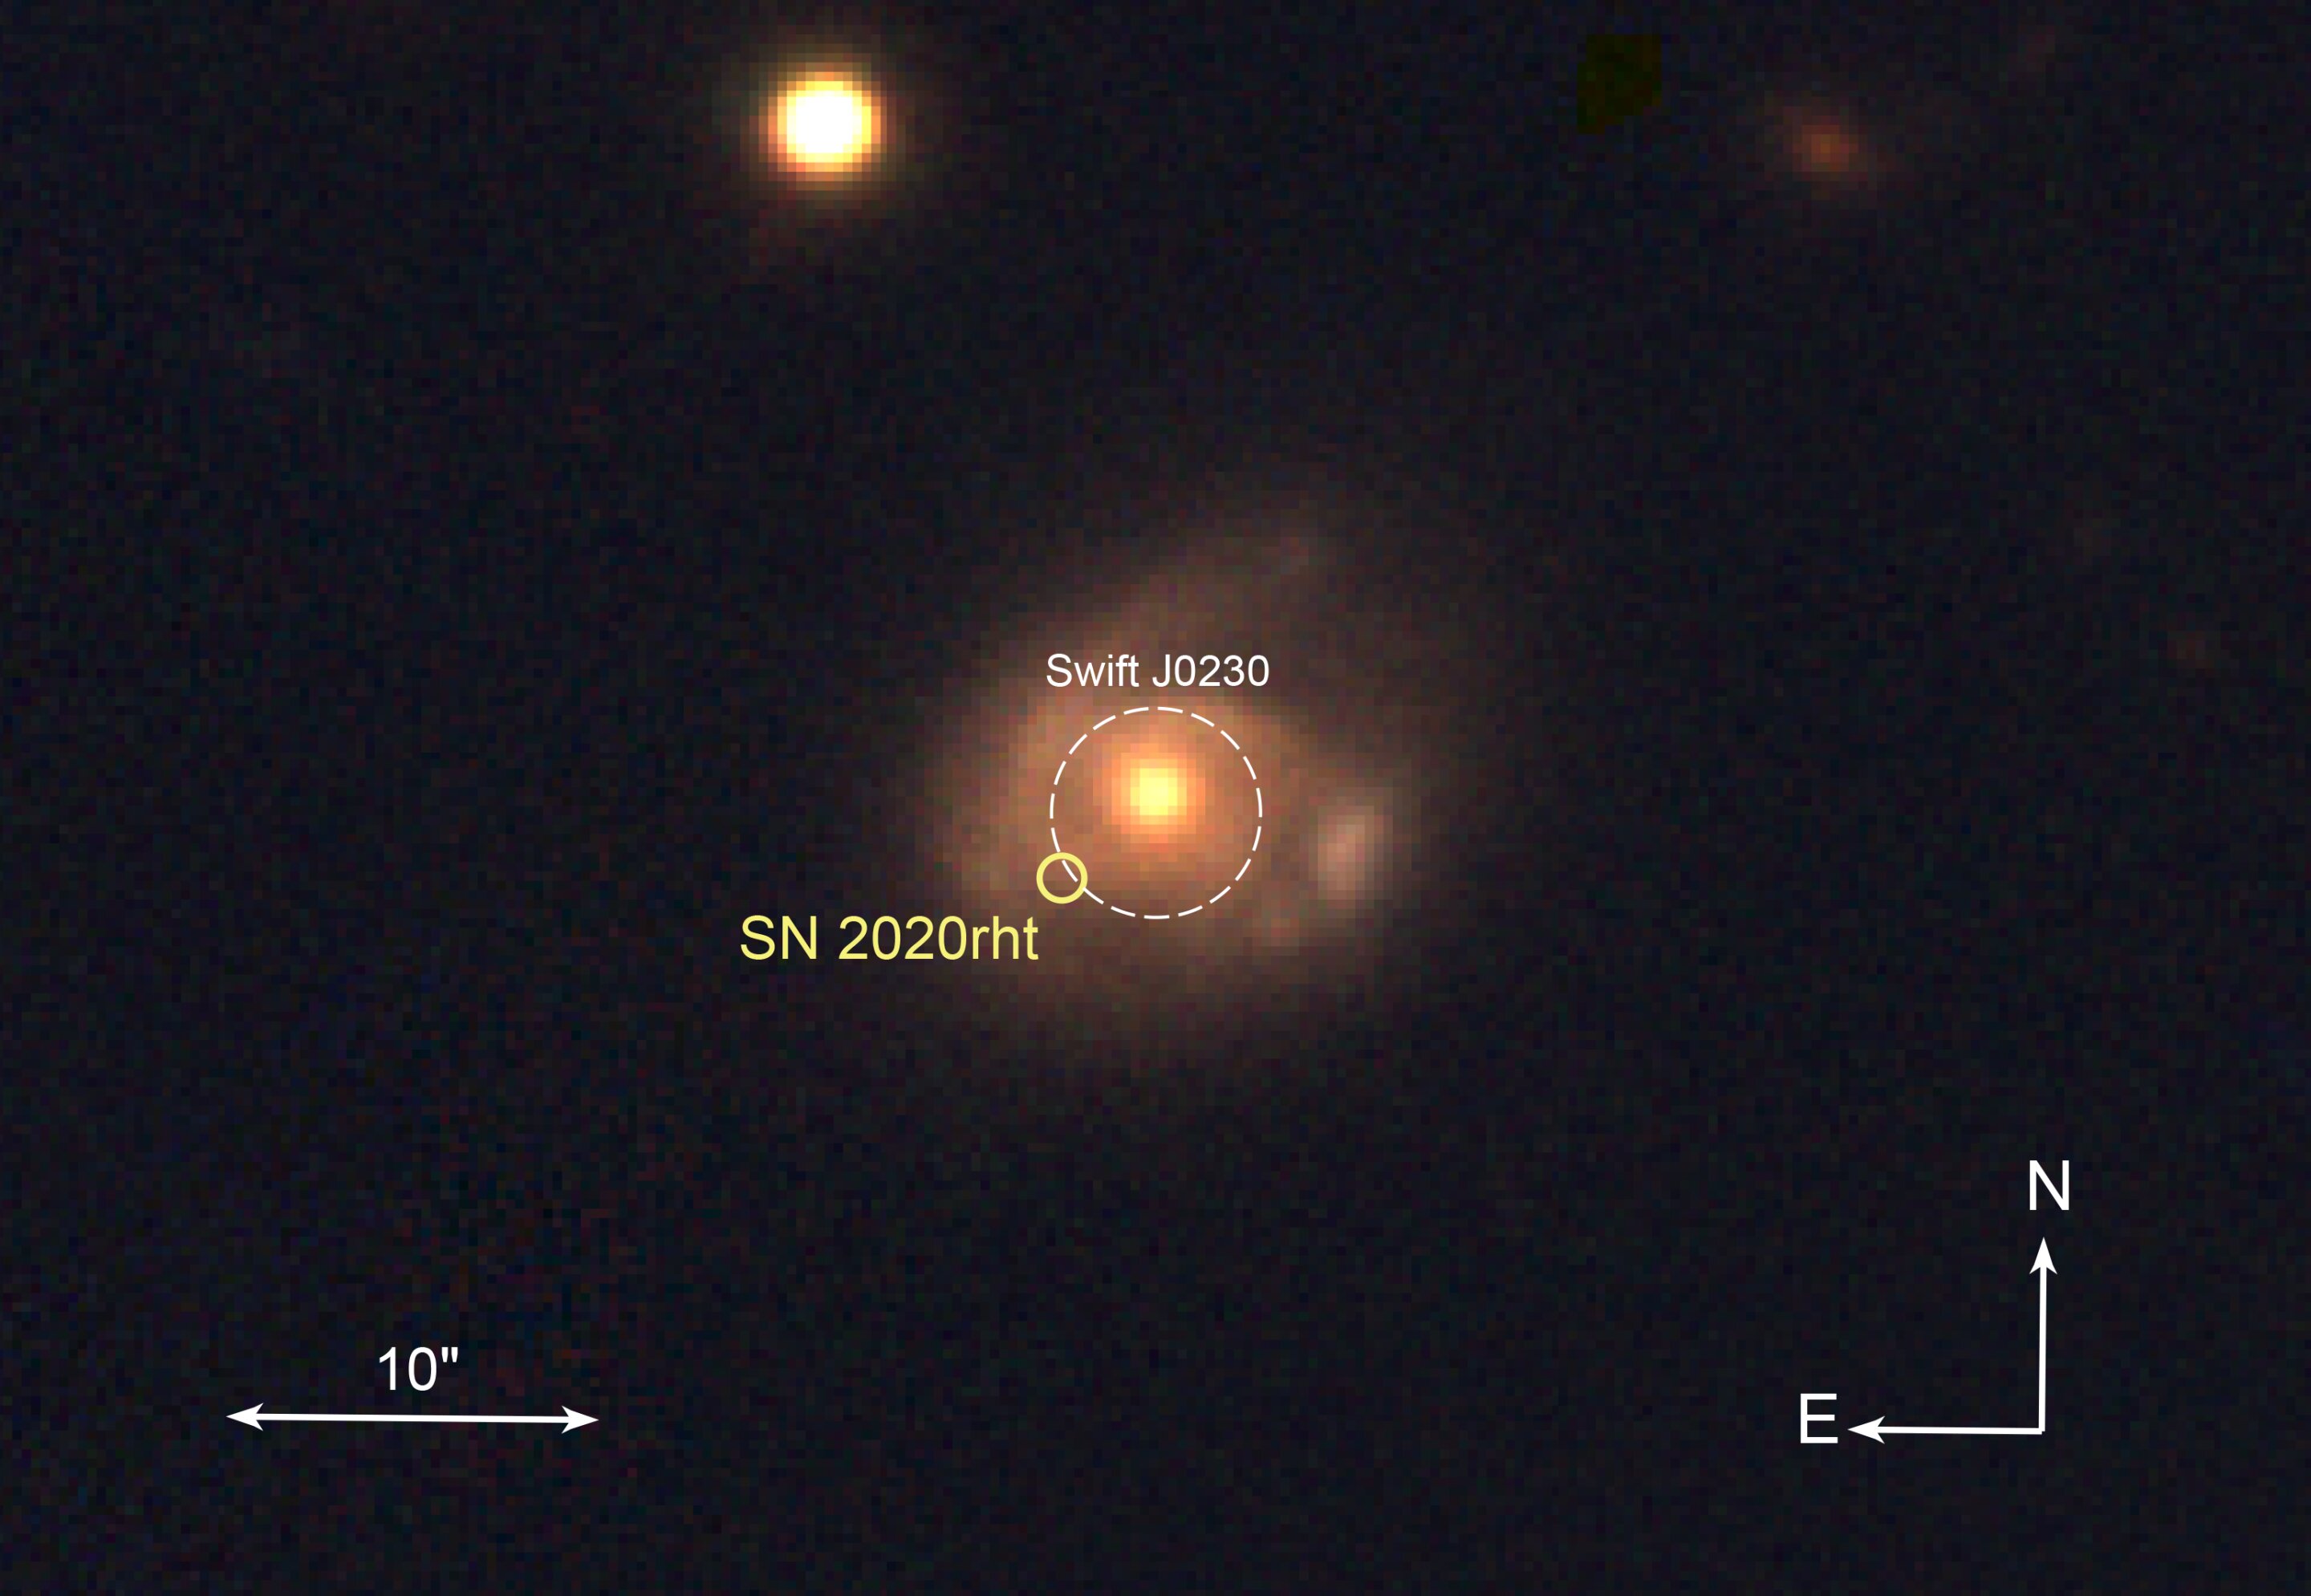 Czarna dziura pochłania stopniowo gwiazdę podobną do Słońca